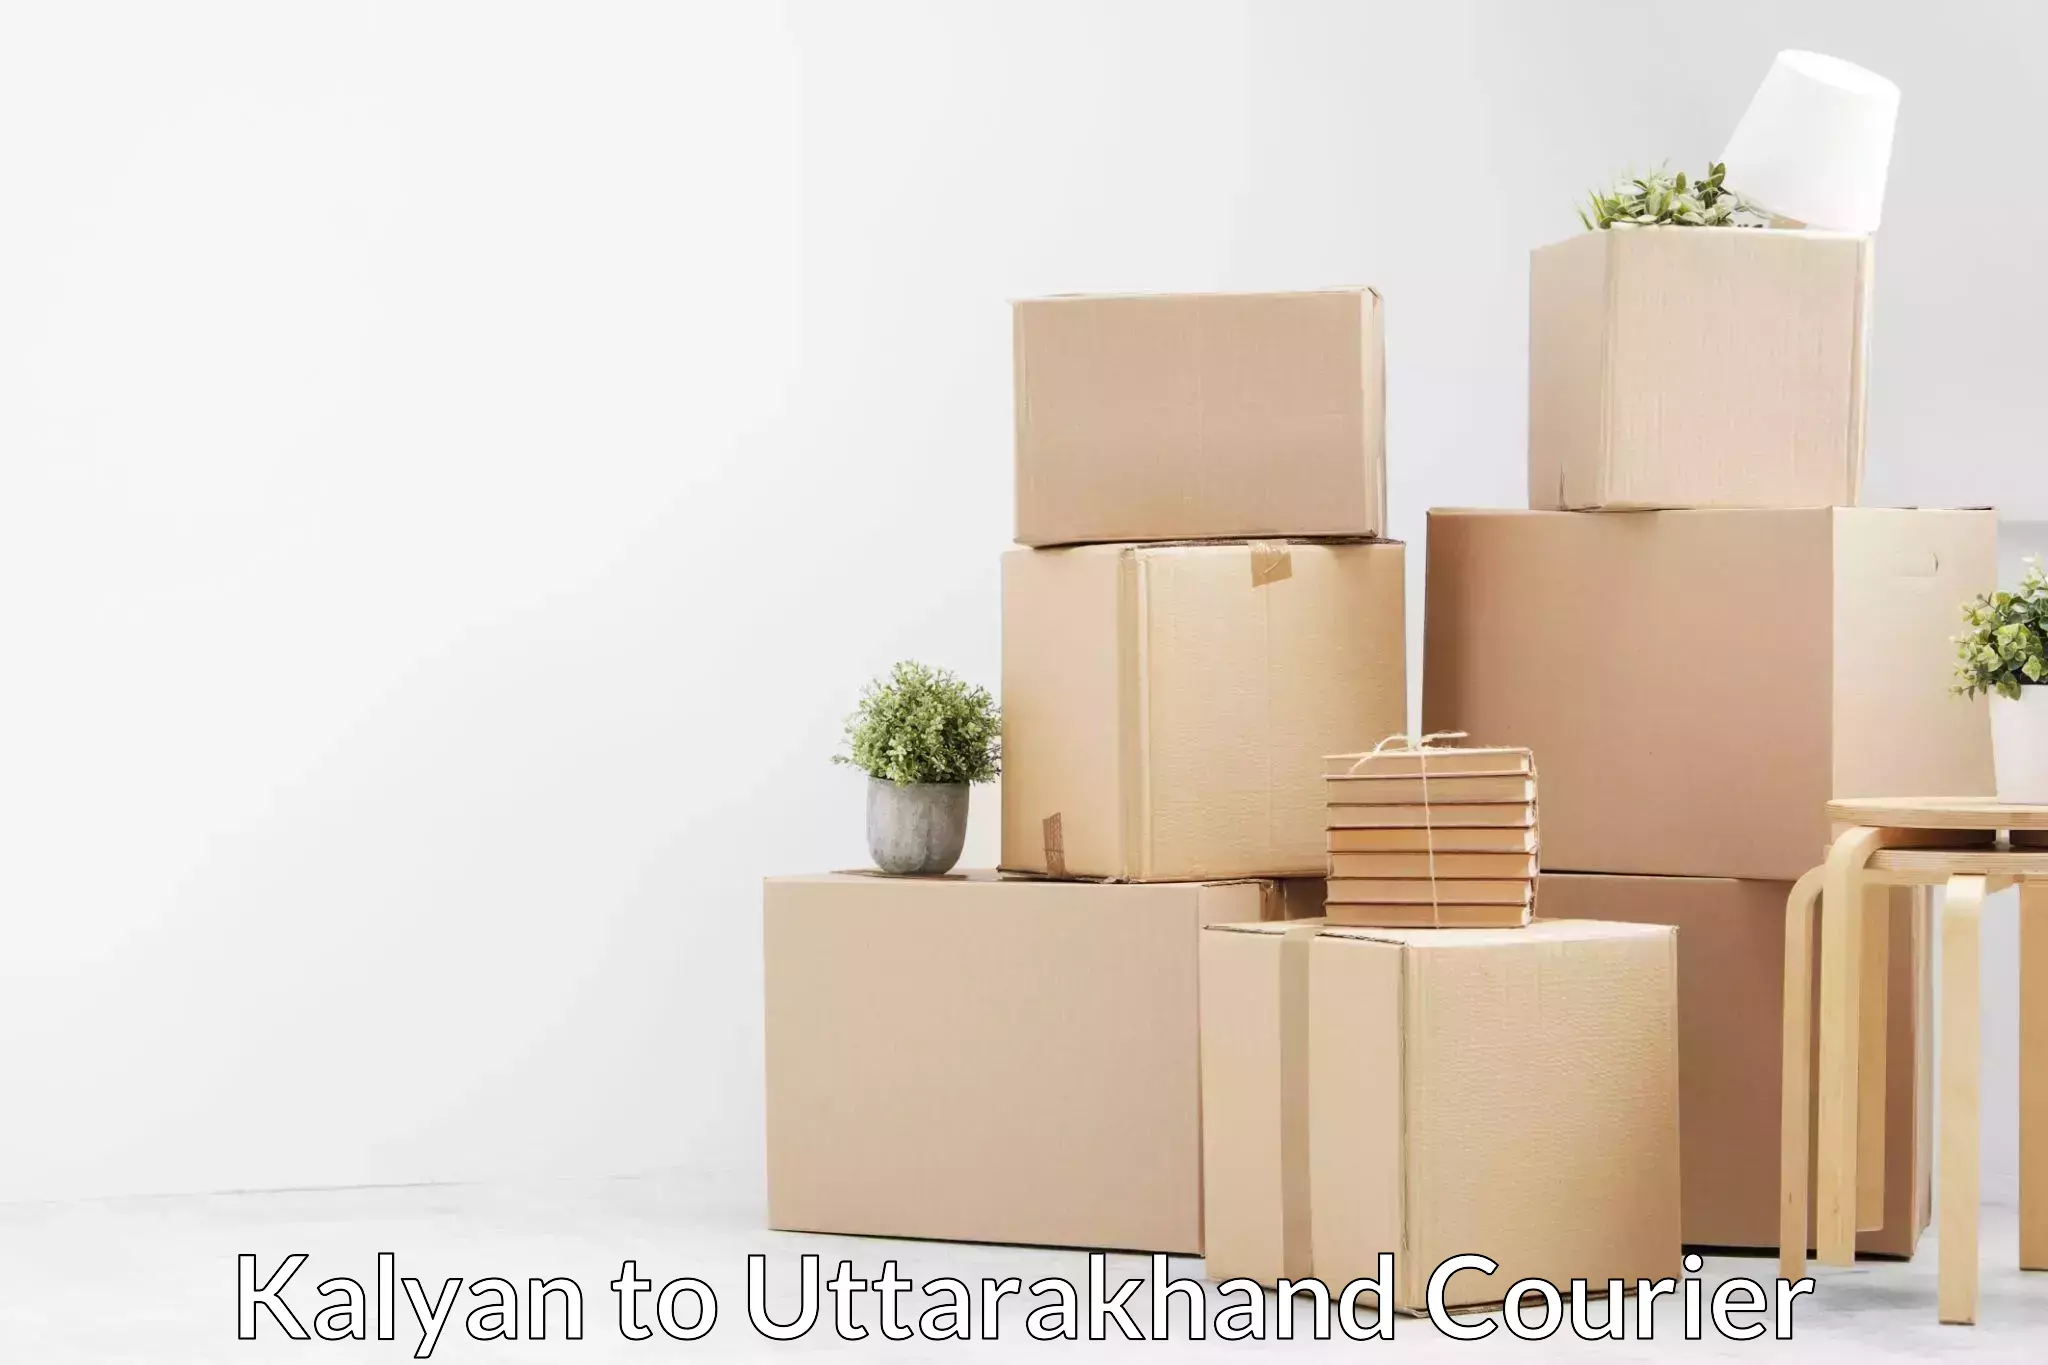 Professional movers Kalyan to Dehradun